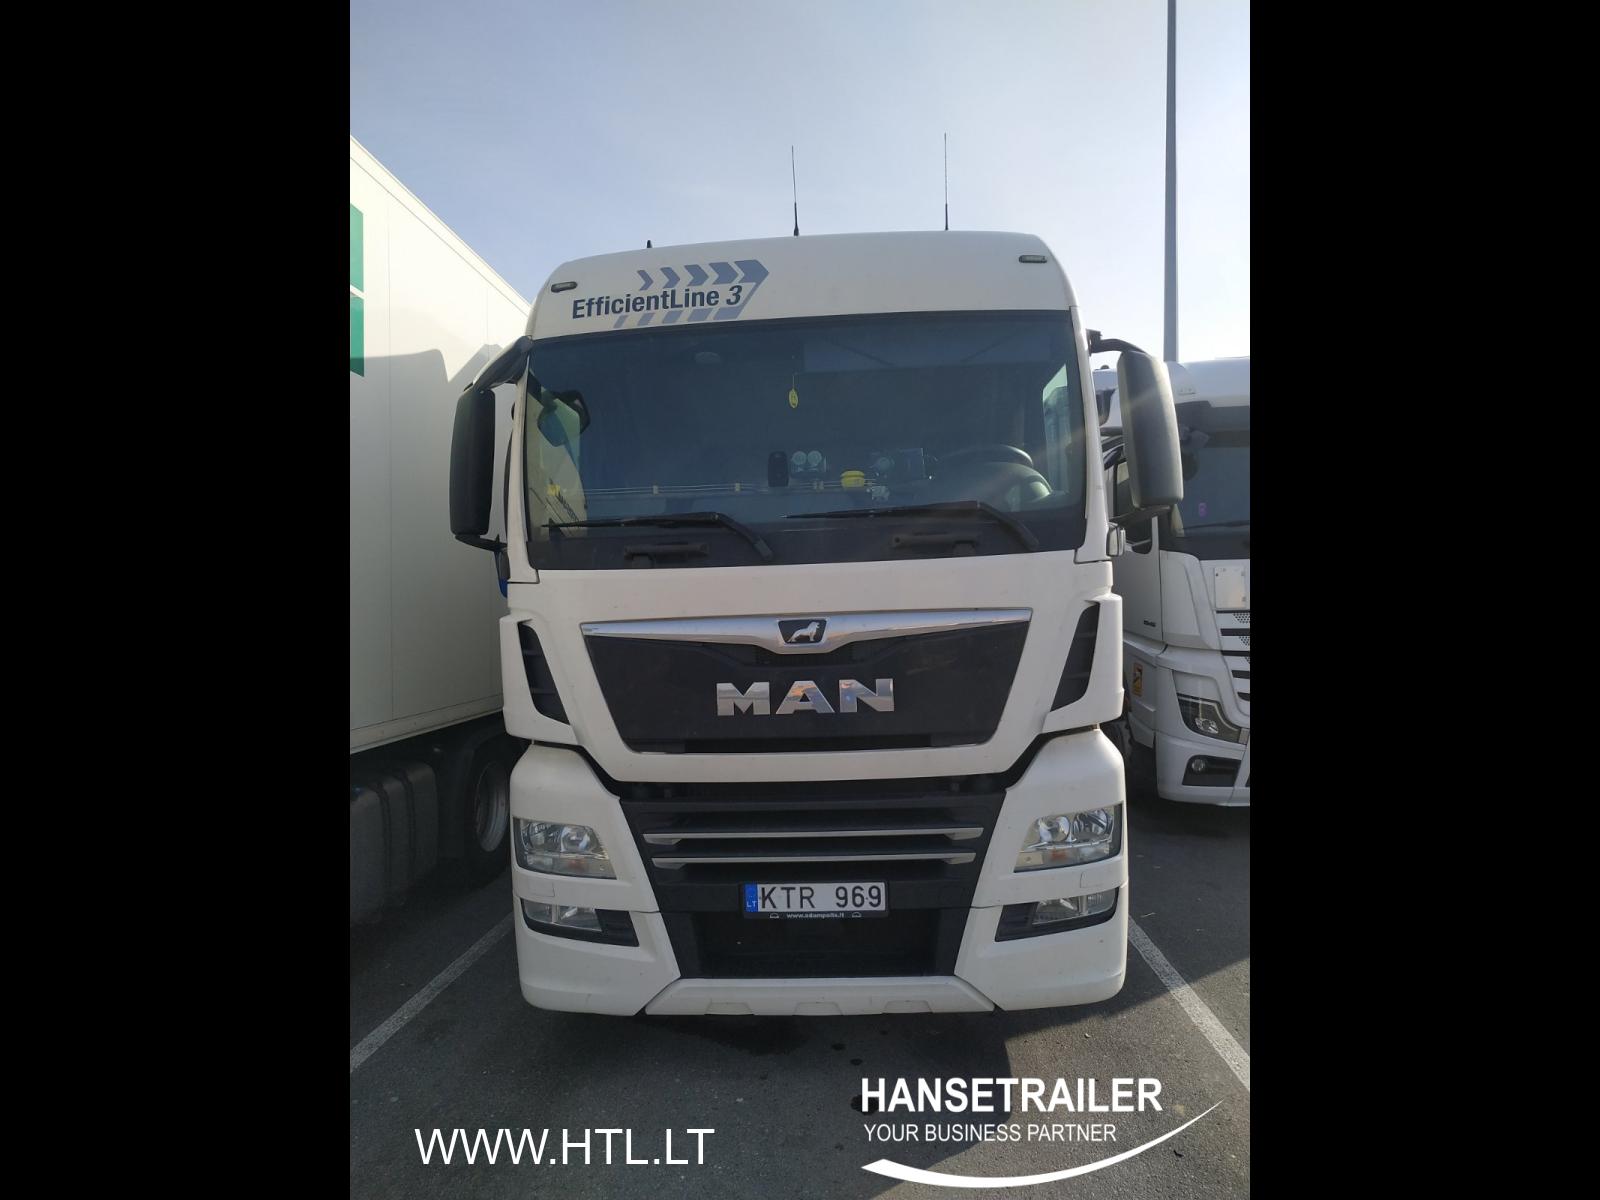 2019 Truck 4x2 MAN TGX 18.500 Atvyksta Coming soon